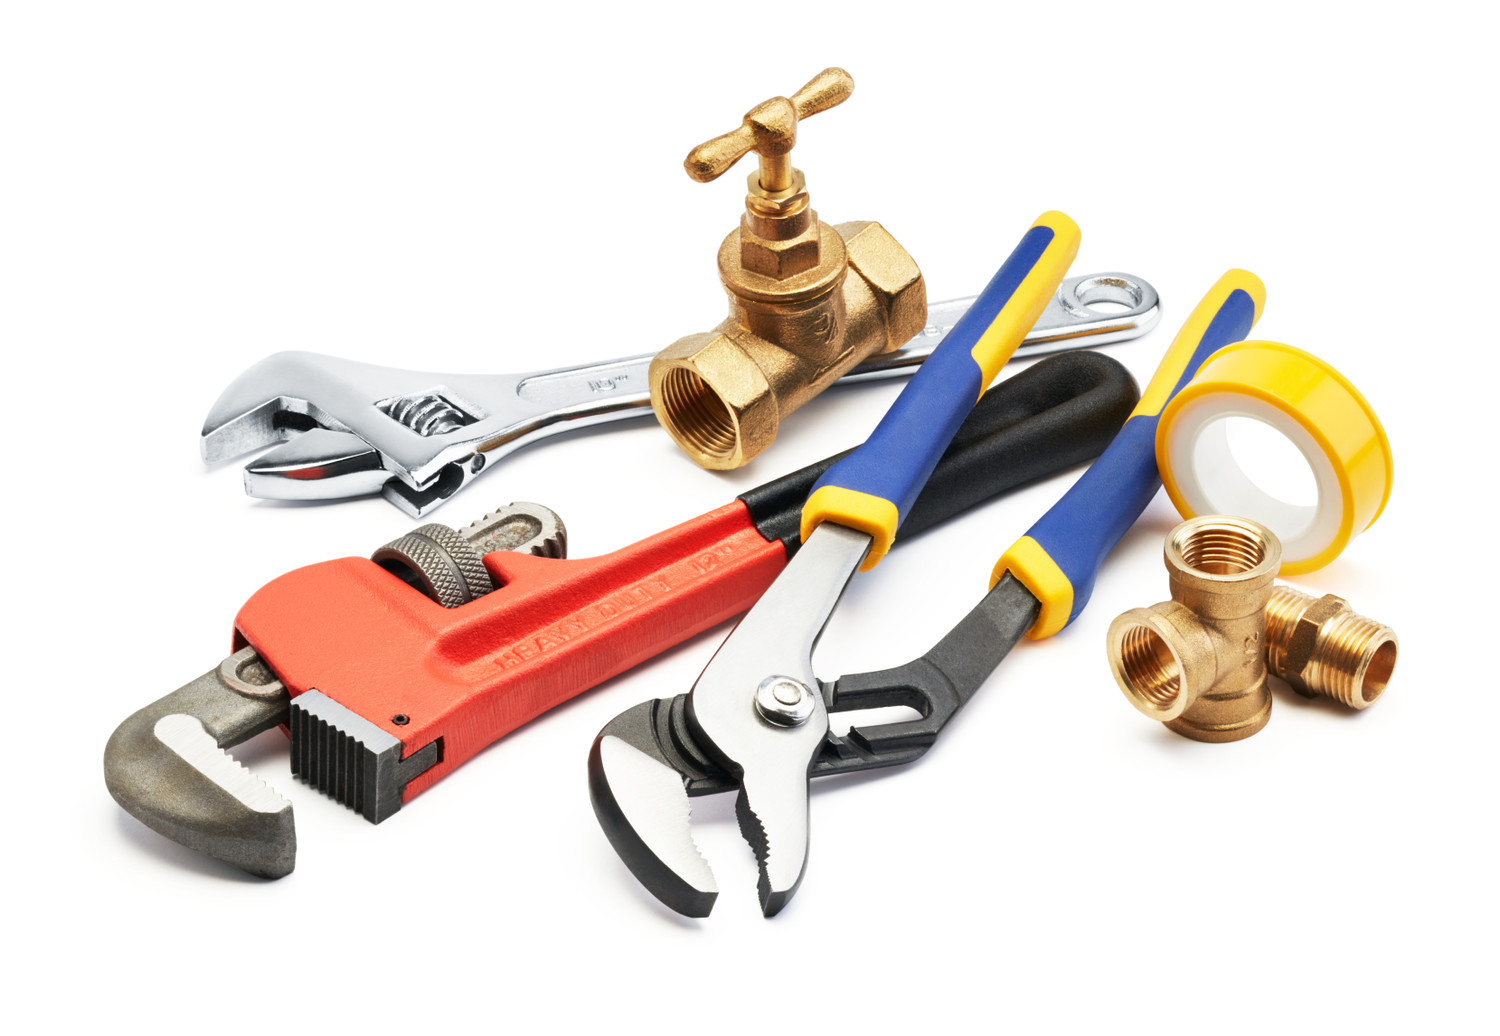 Plumbing tools((emergencyplumb.co.uk))